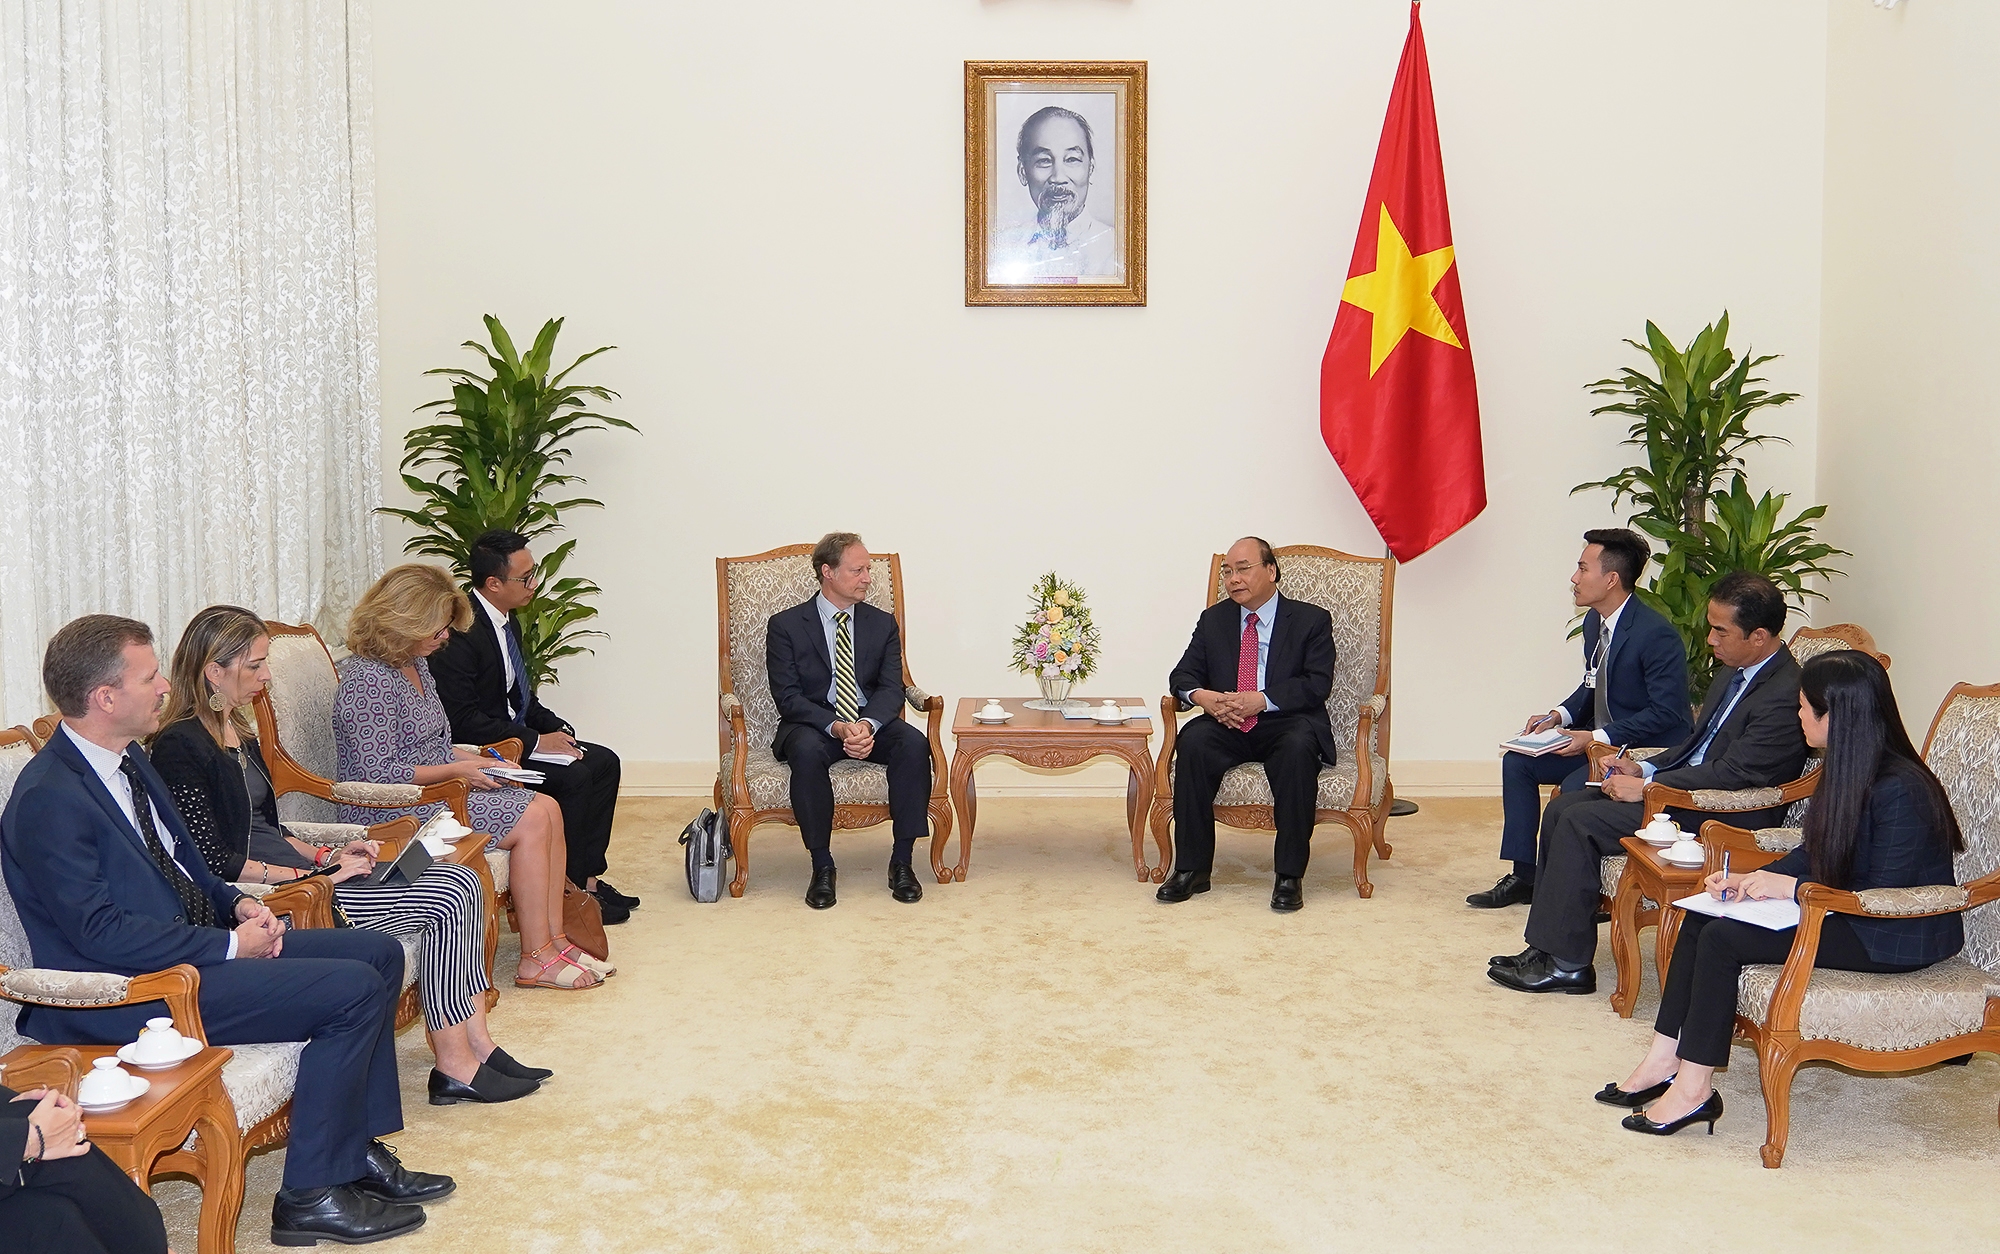 EU tiếp tục là đối tác hàng đầu của Việt Nam